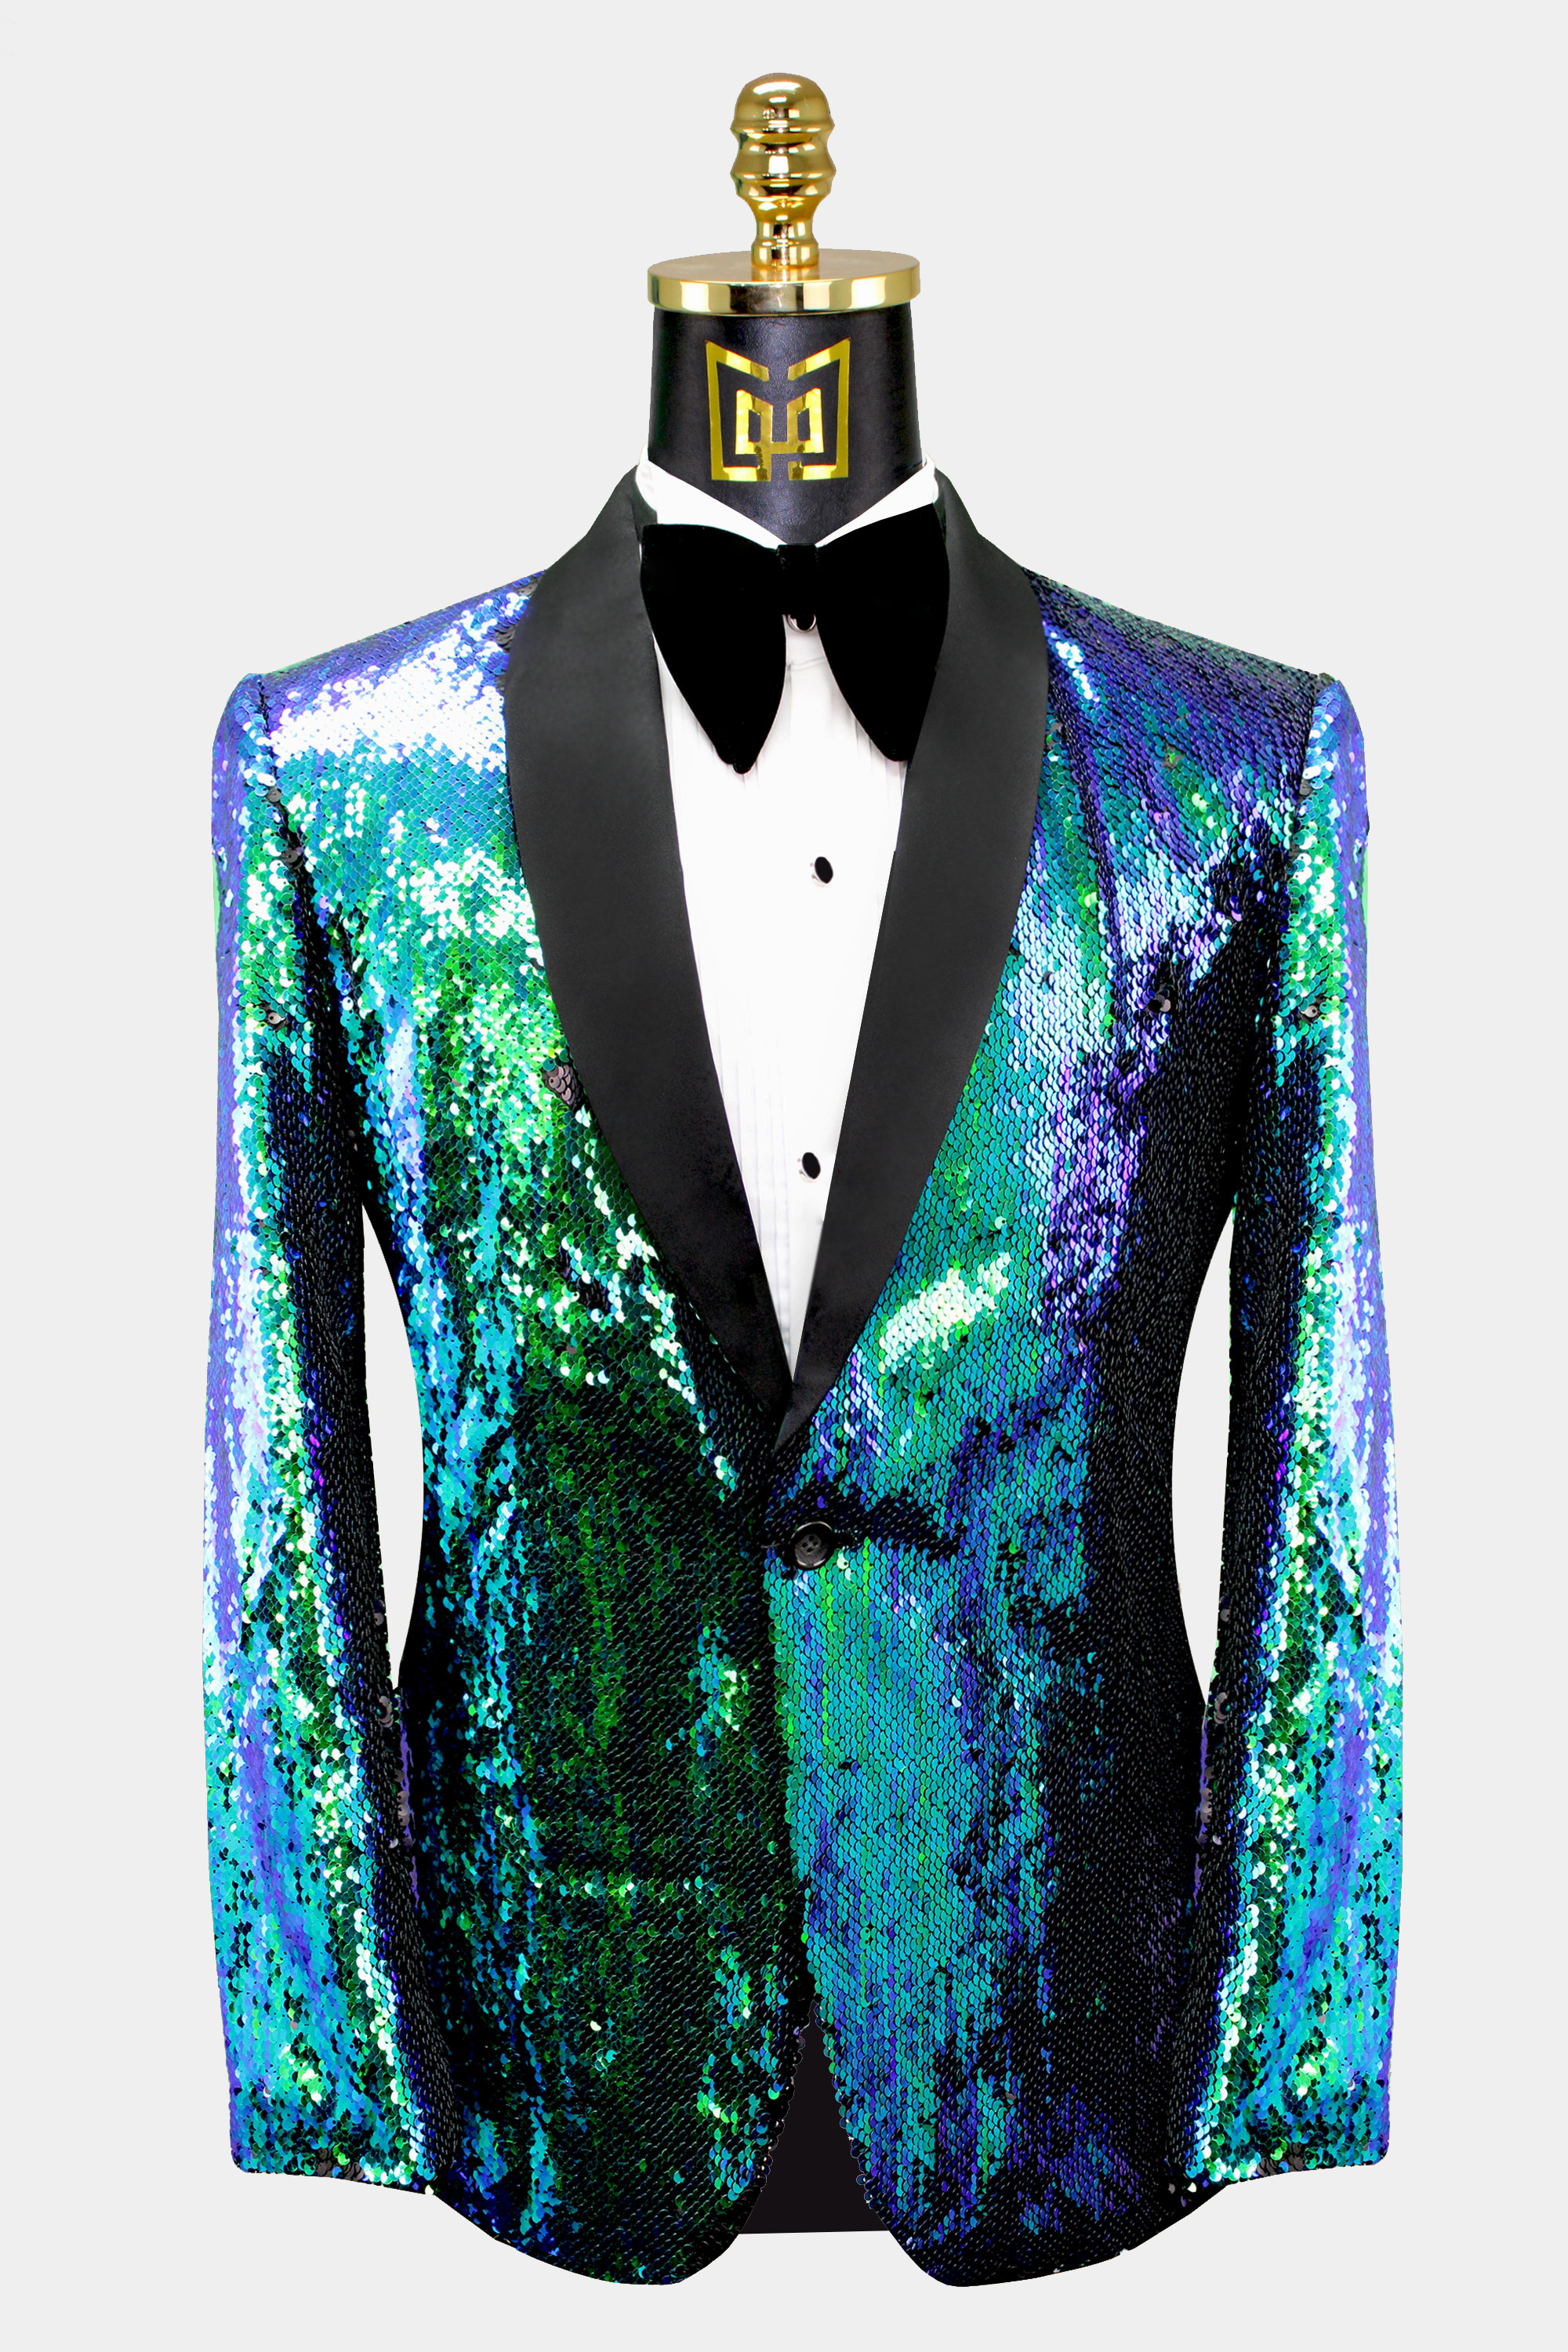 Mens-Blue-and-Green-Tuxedo-Jacket-Sequin-Prom-Blazer-Suit-from-Gentlemansguru.com